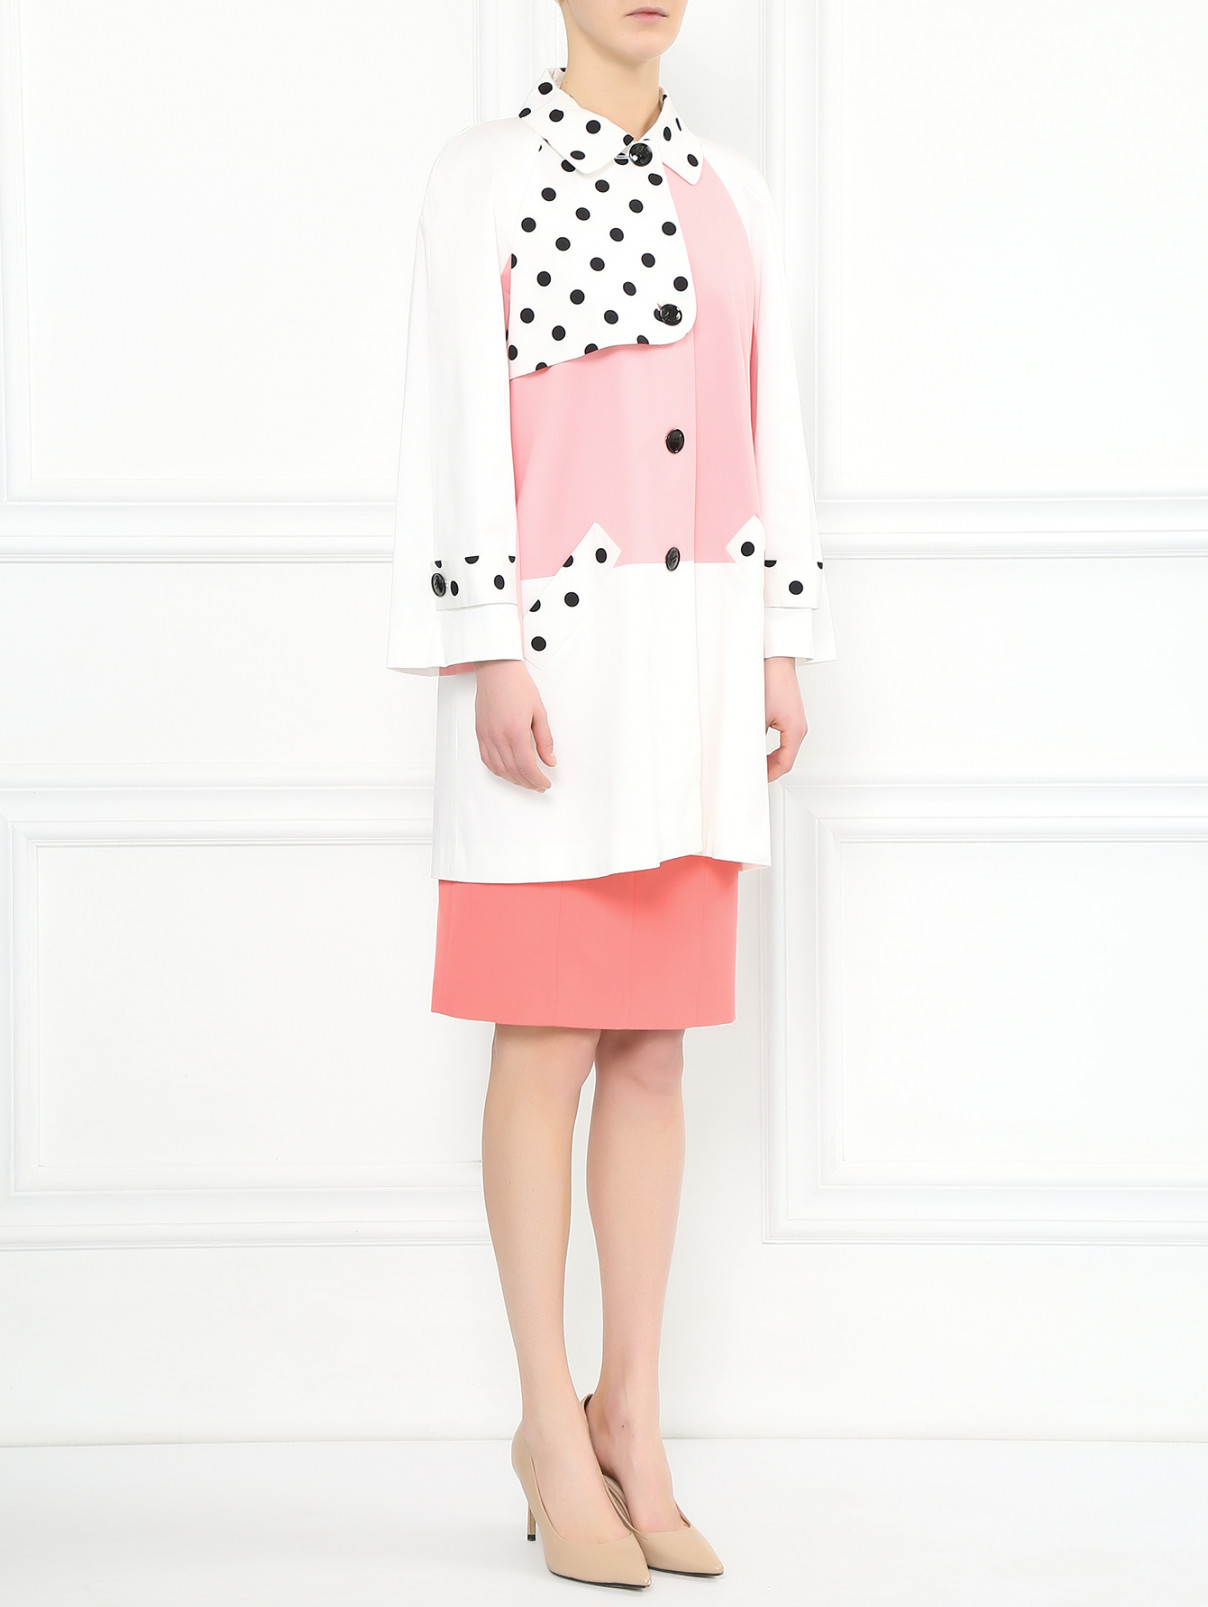 Легкое пальто из хлопка с узорными вставками Moschino Cheap&Chic  –  Модель Общий вид  – Цвет:  Мультиколор